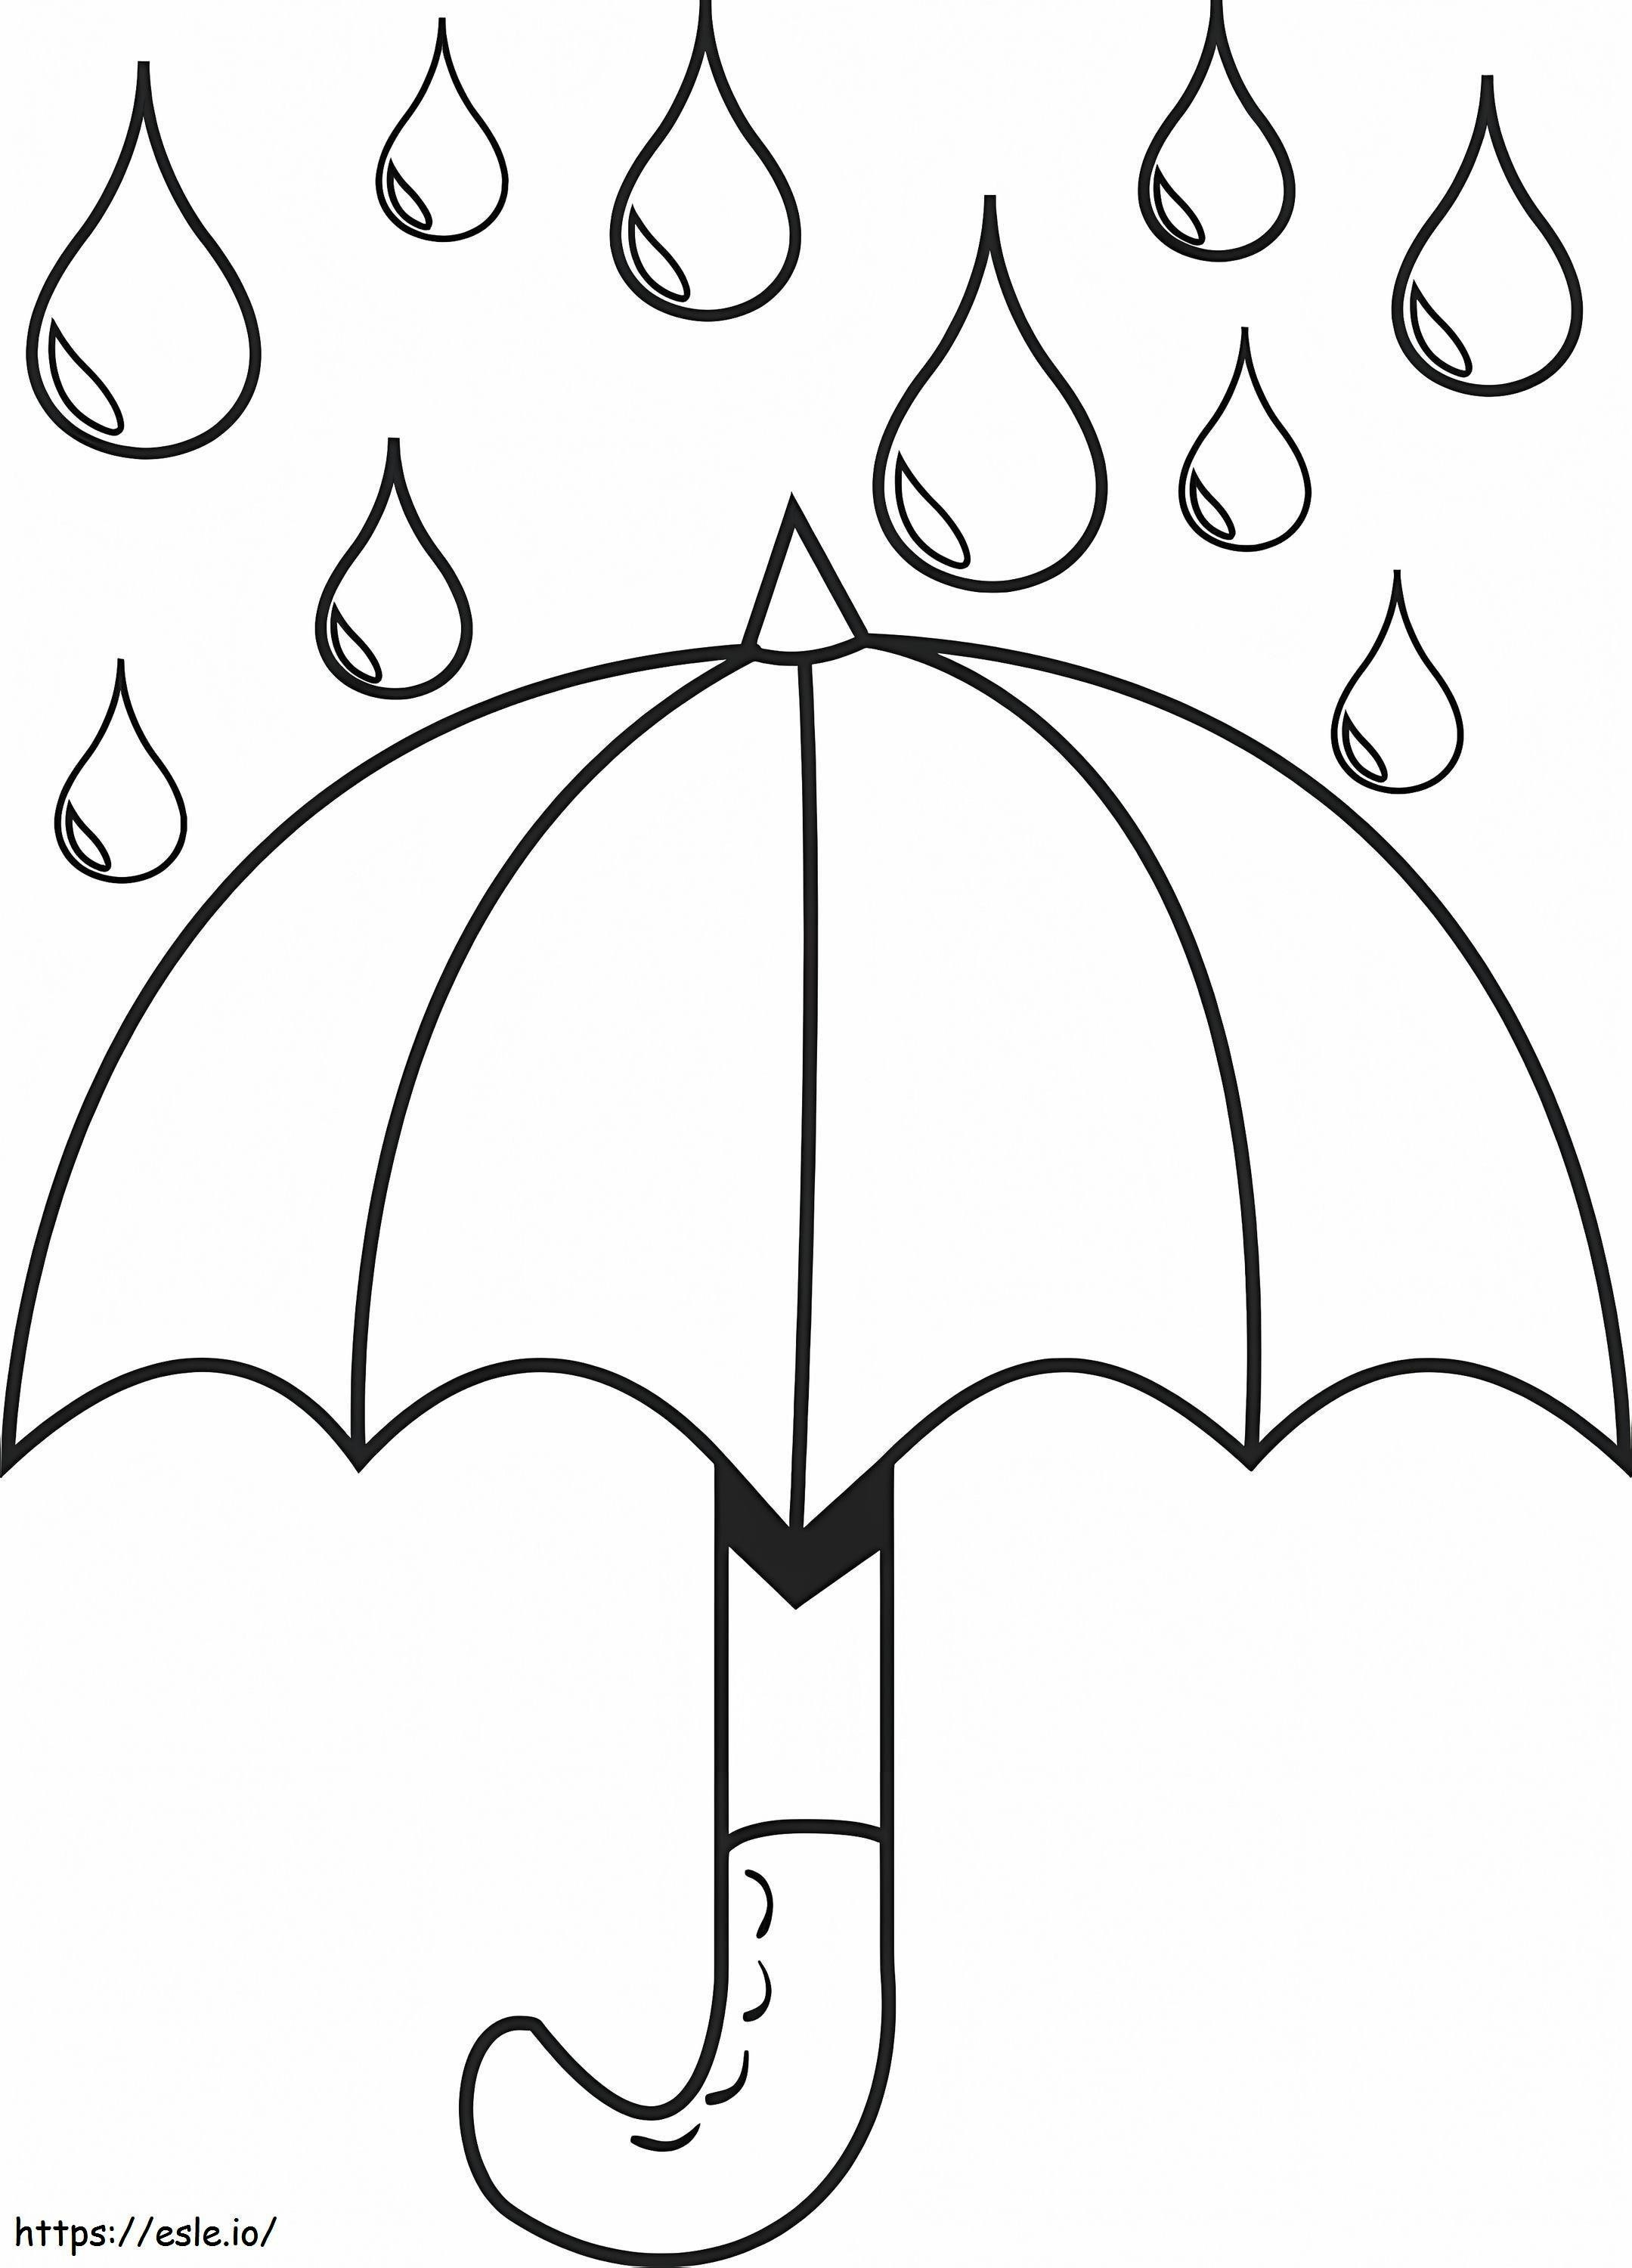 Guarda-chuva com gotas de chuva para colorir